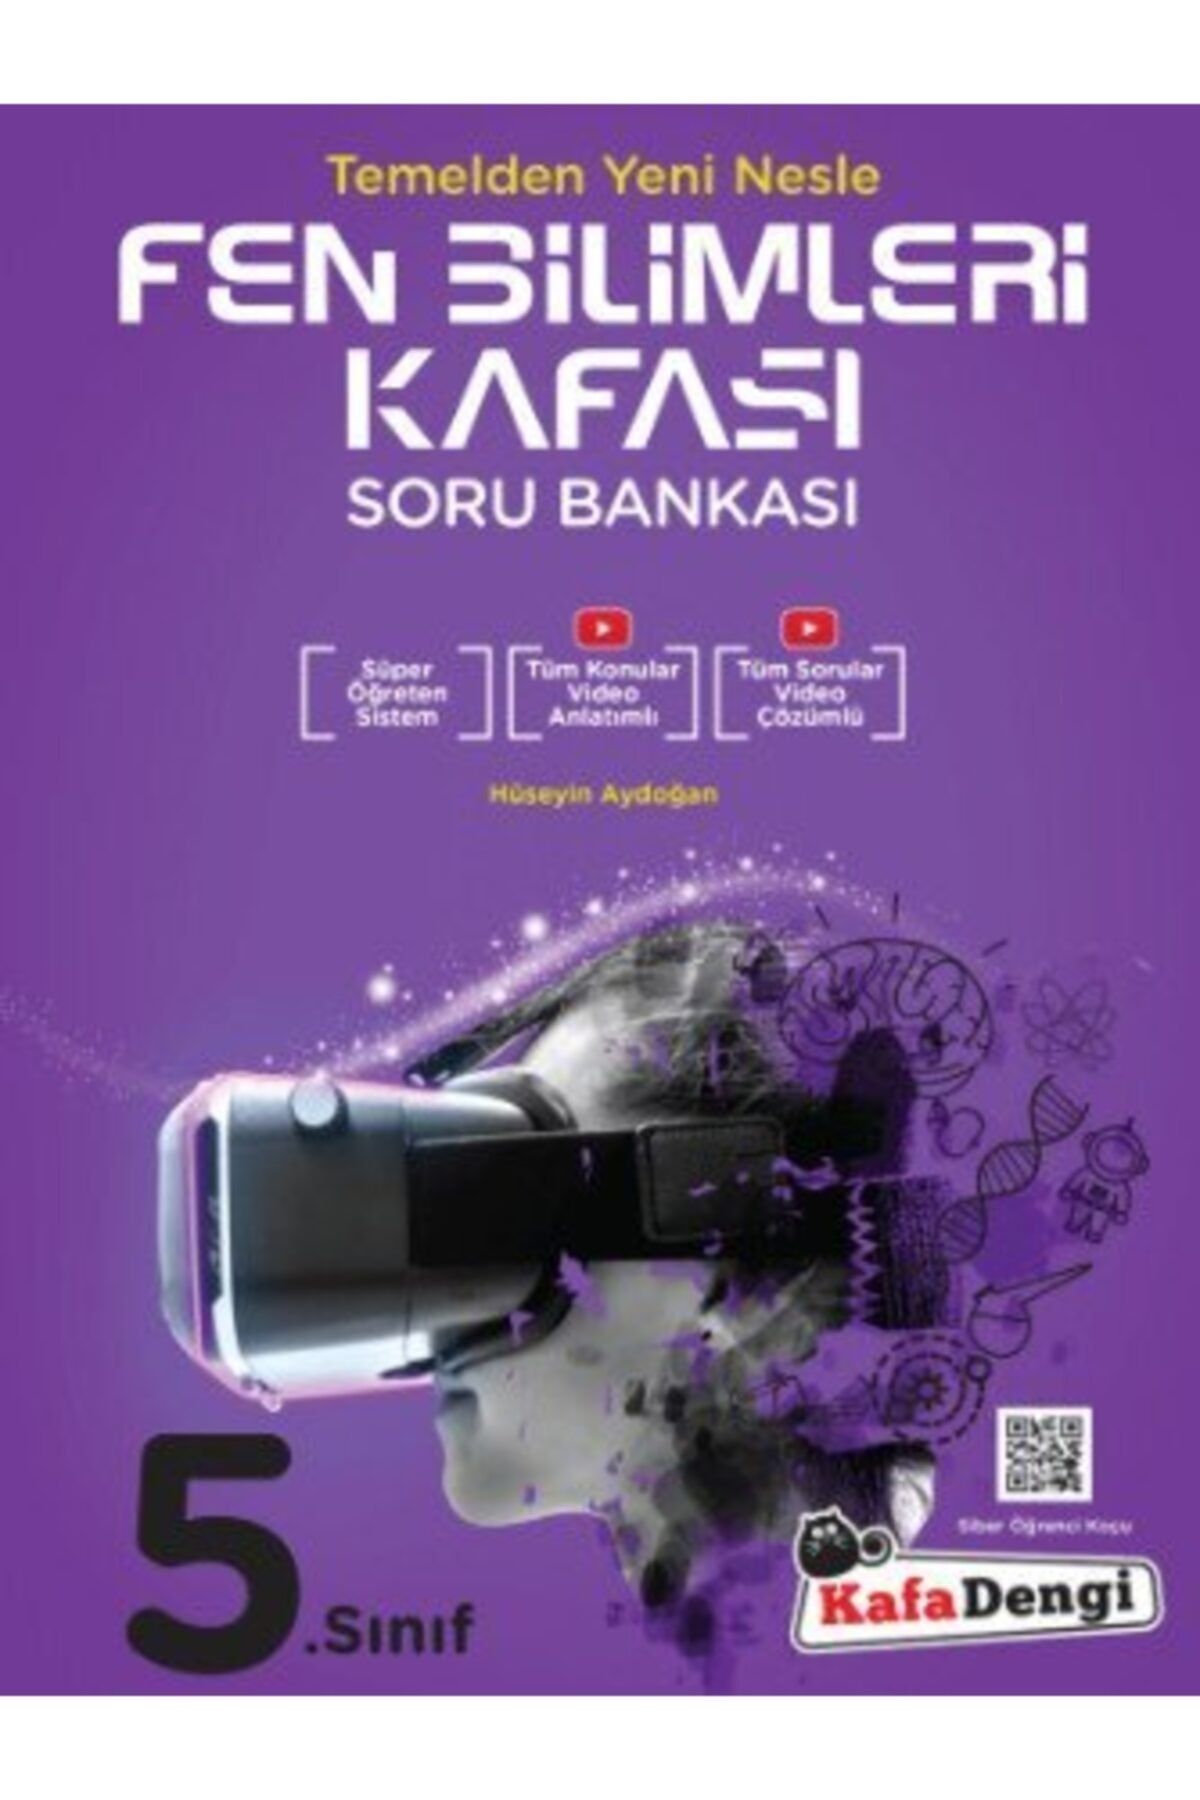 Kafa Dengi Yayınları 5.sınıf Fen Bilimleri Kafası Soru Bankası